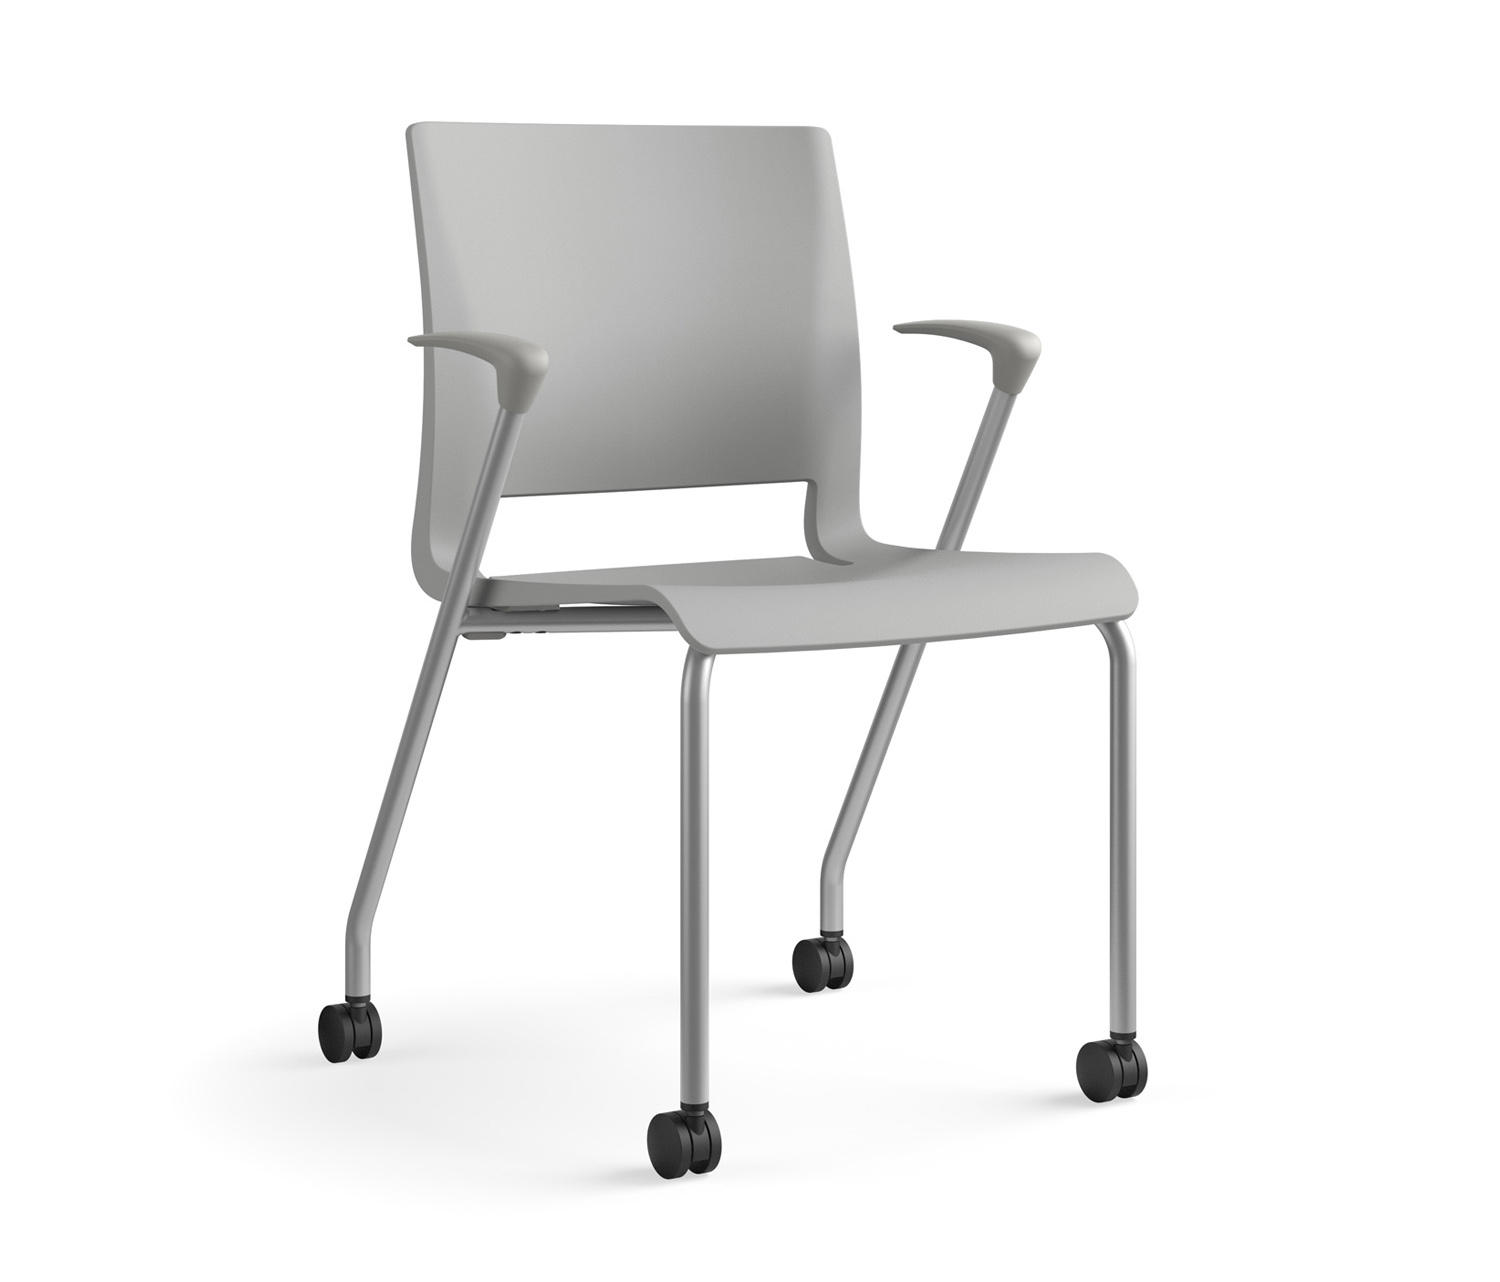 Chair legs. Стул Classic zt24. One-legged Chair. Launch Armchair.